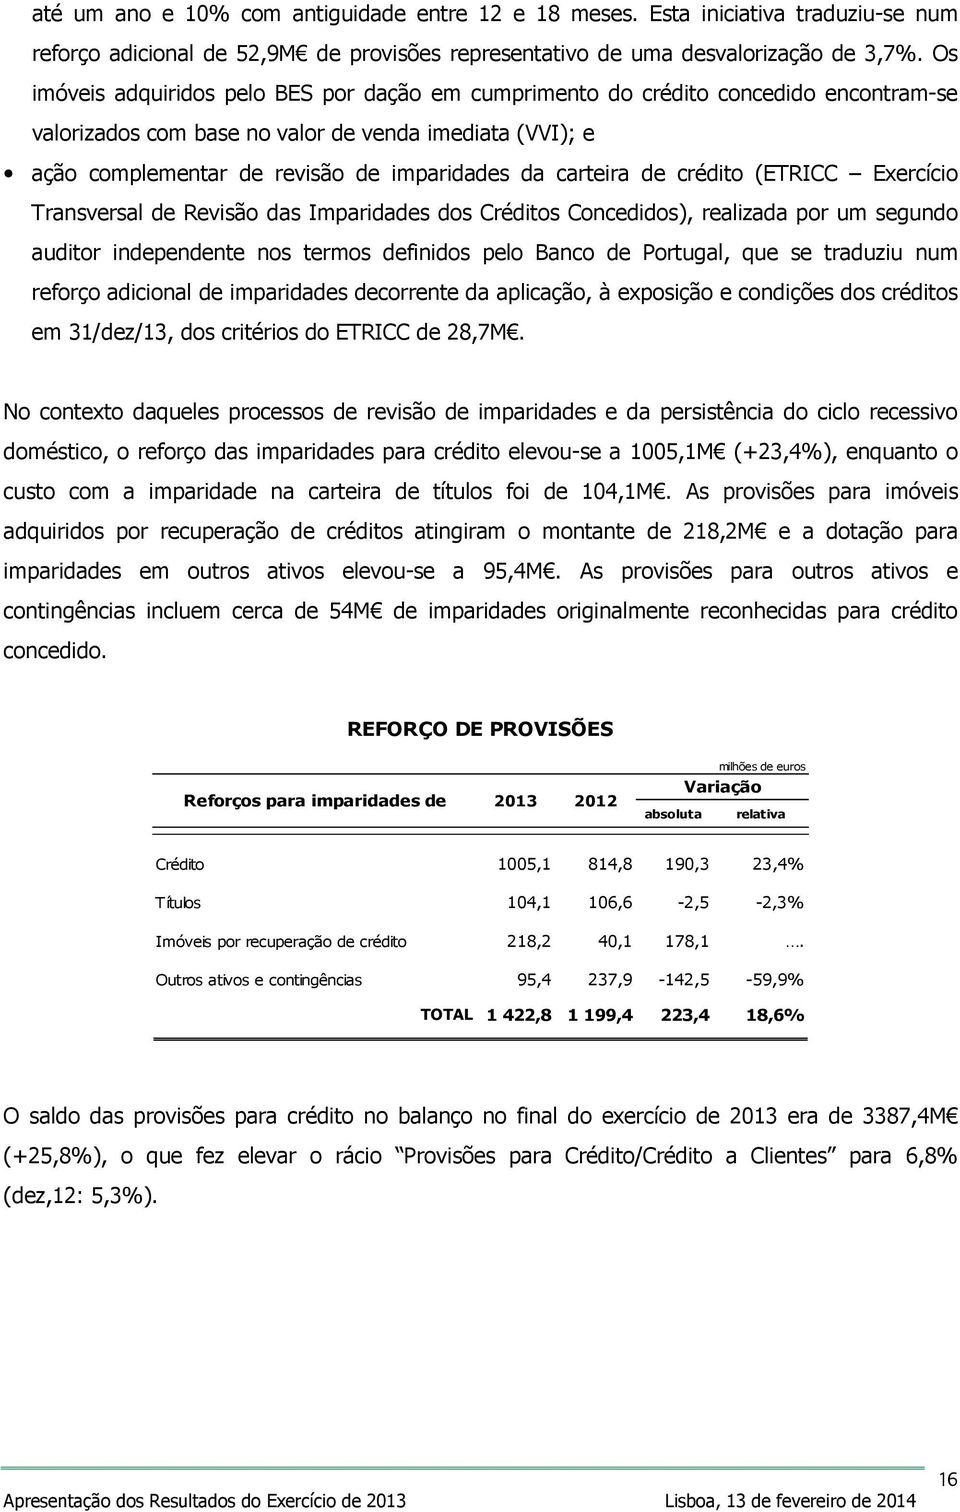 carteira de crédito (ETRICC Exercício Transversal de Revisão das Imparidades dos Créditos Concedidos), realizada por um segundo auditor independente nos termos definidos pelo Banco de Portugal, que